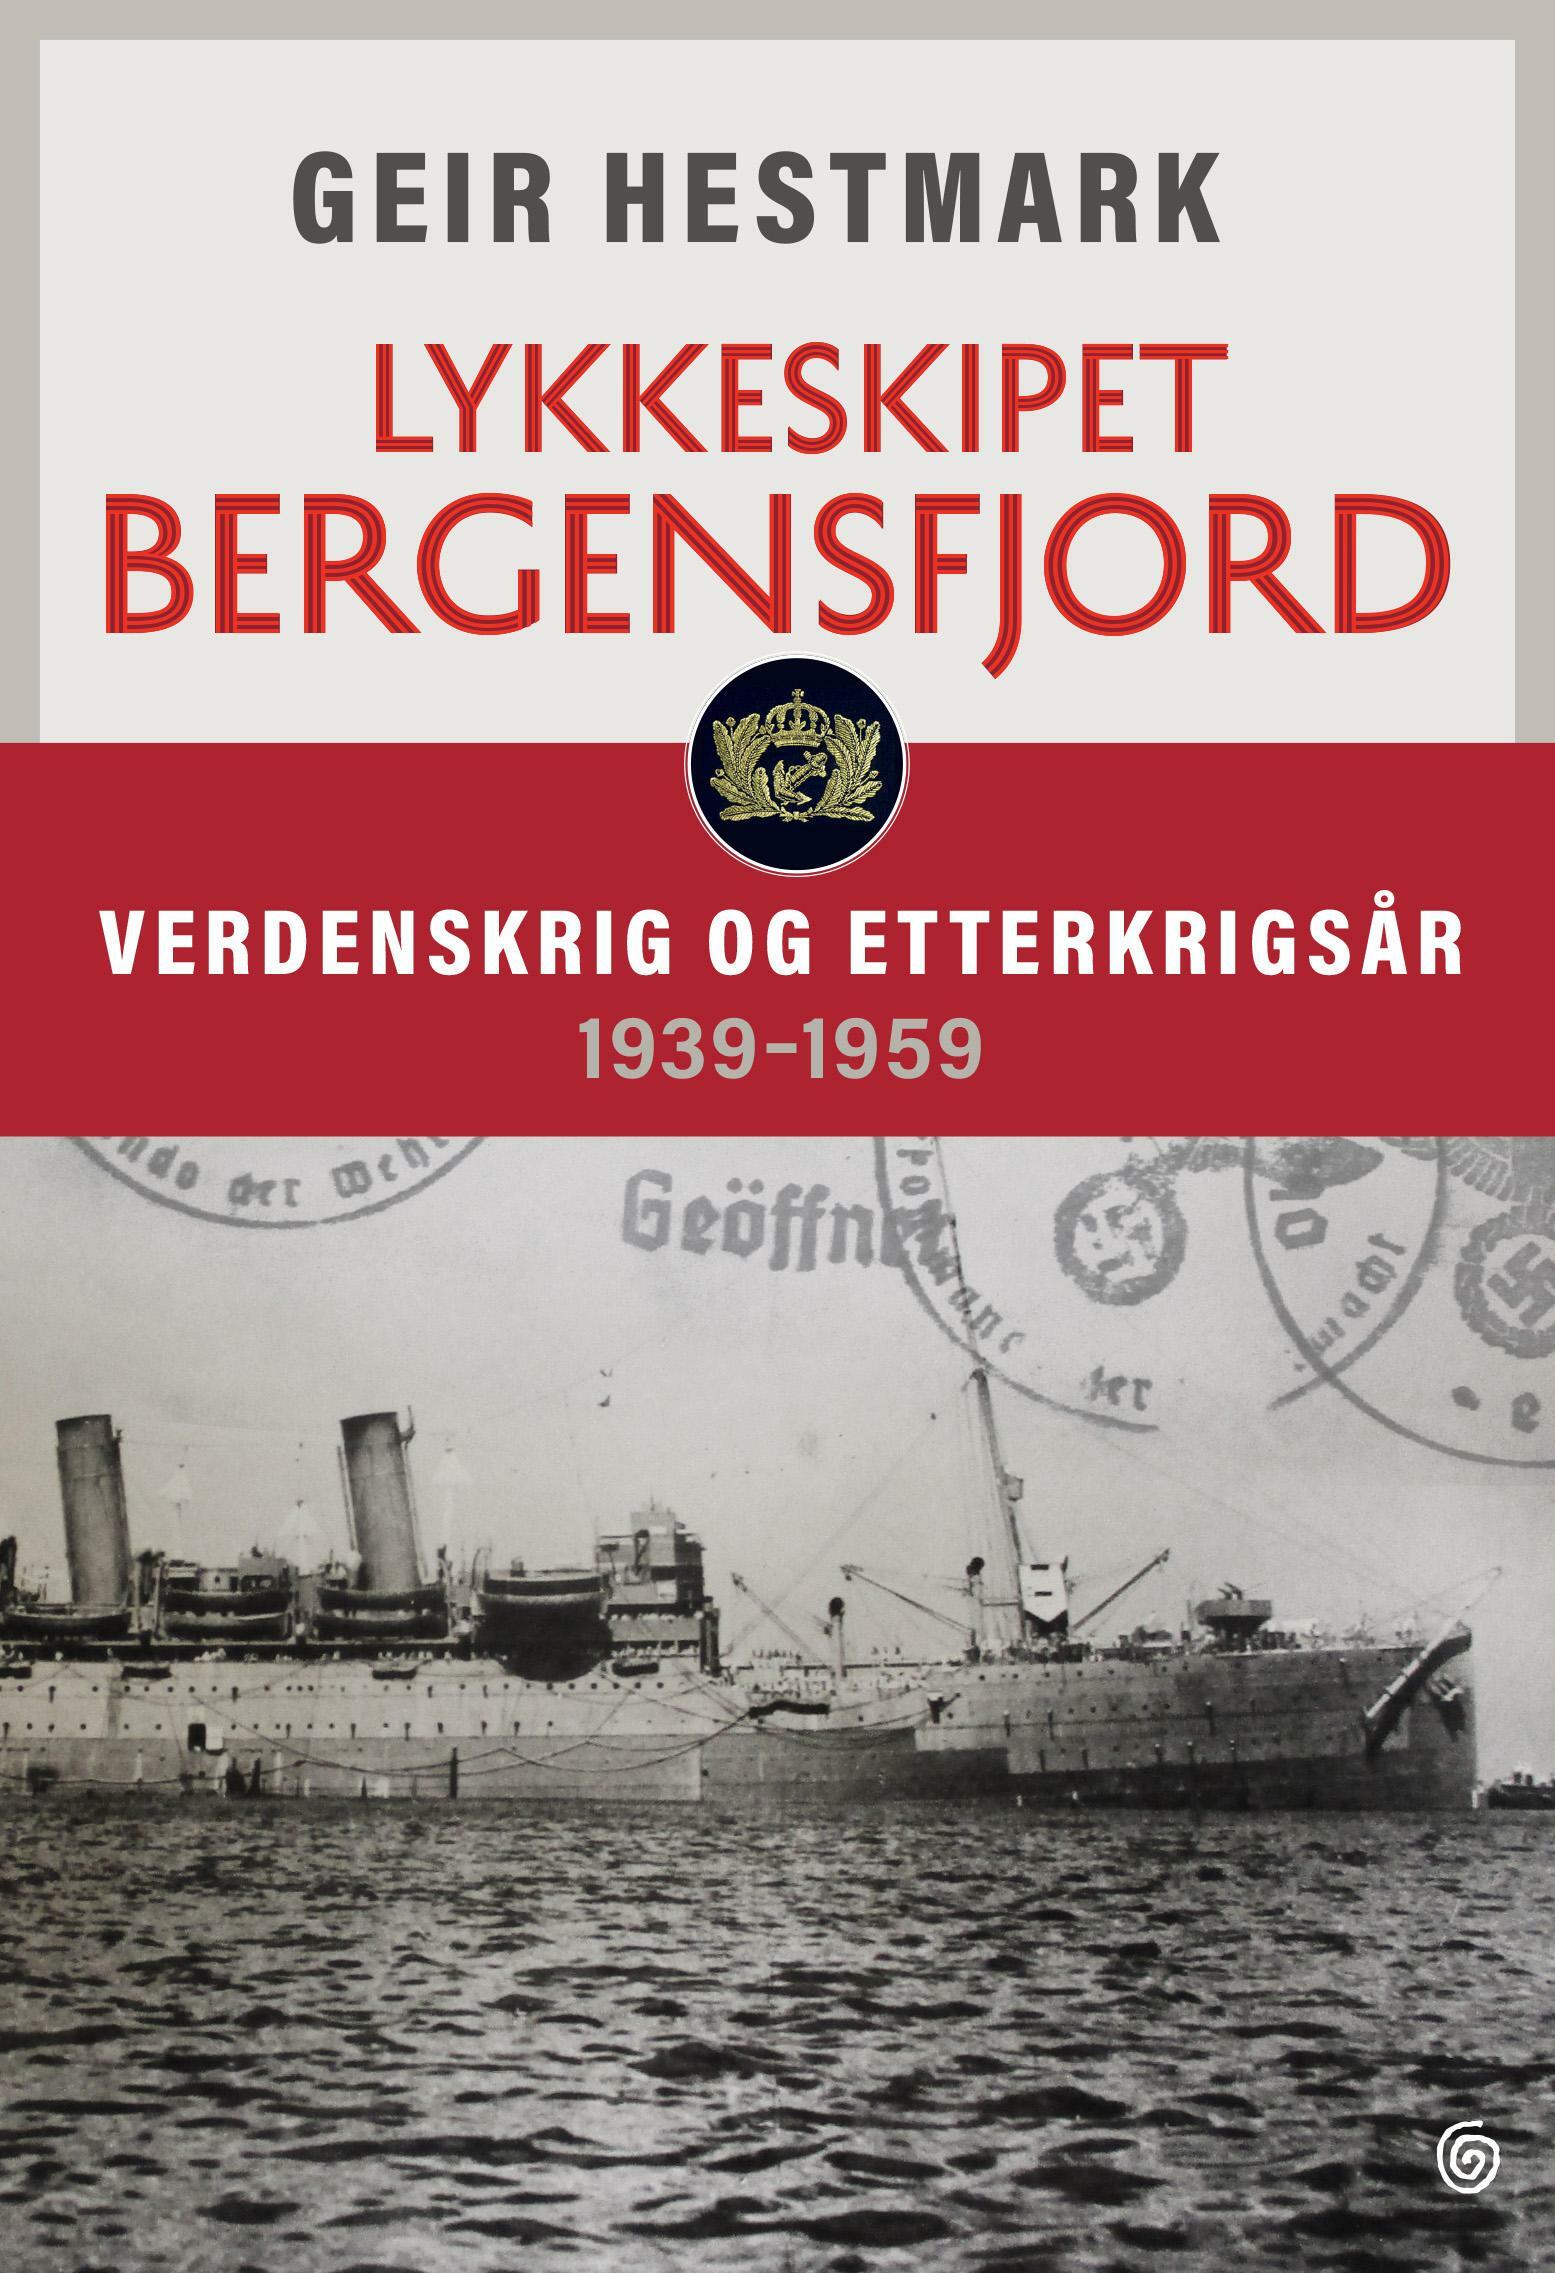 Geir Hestmark Lykkeskipet Bergensfjord cover